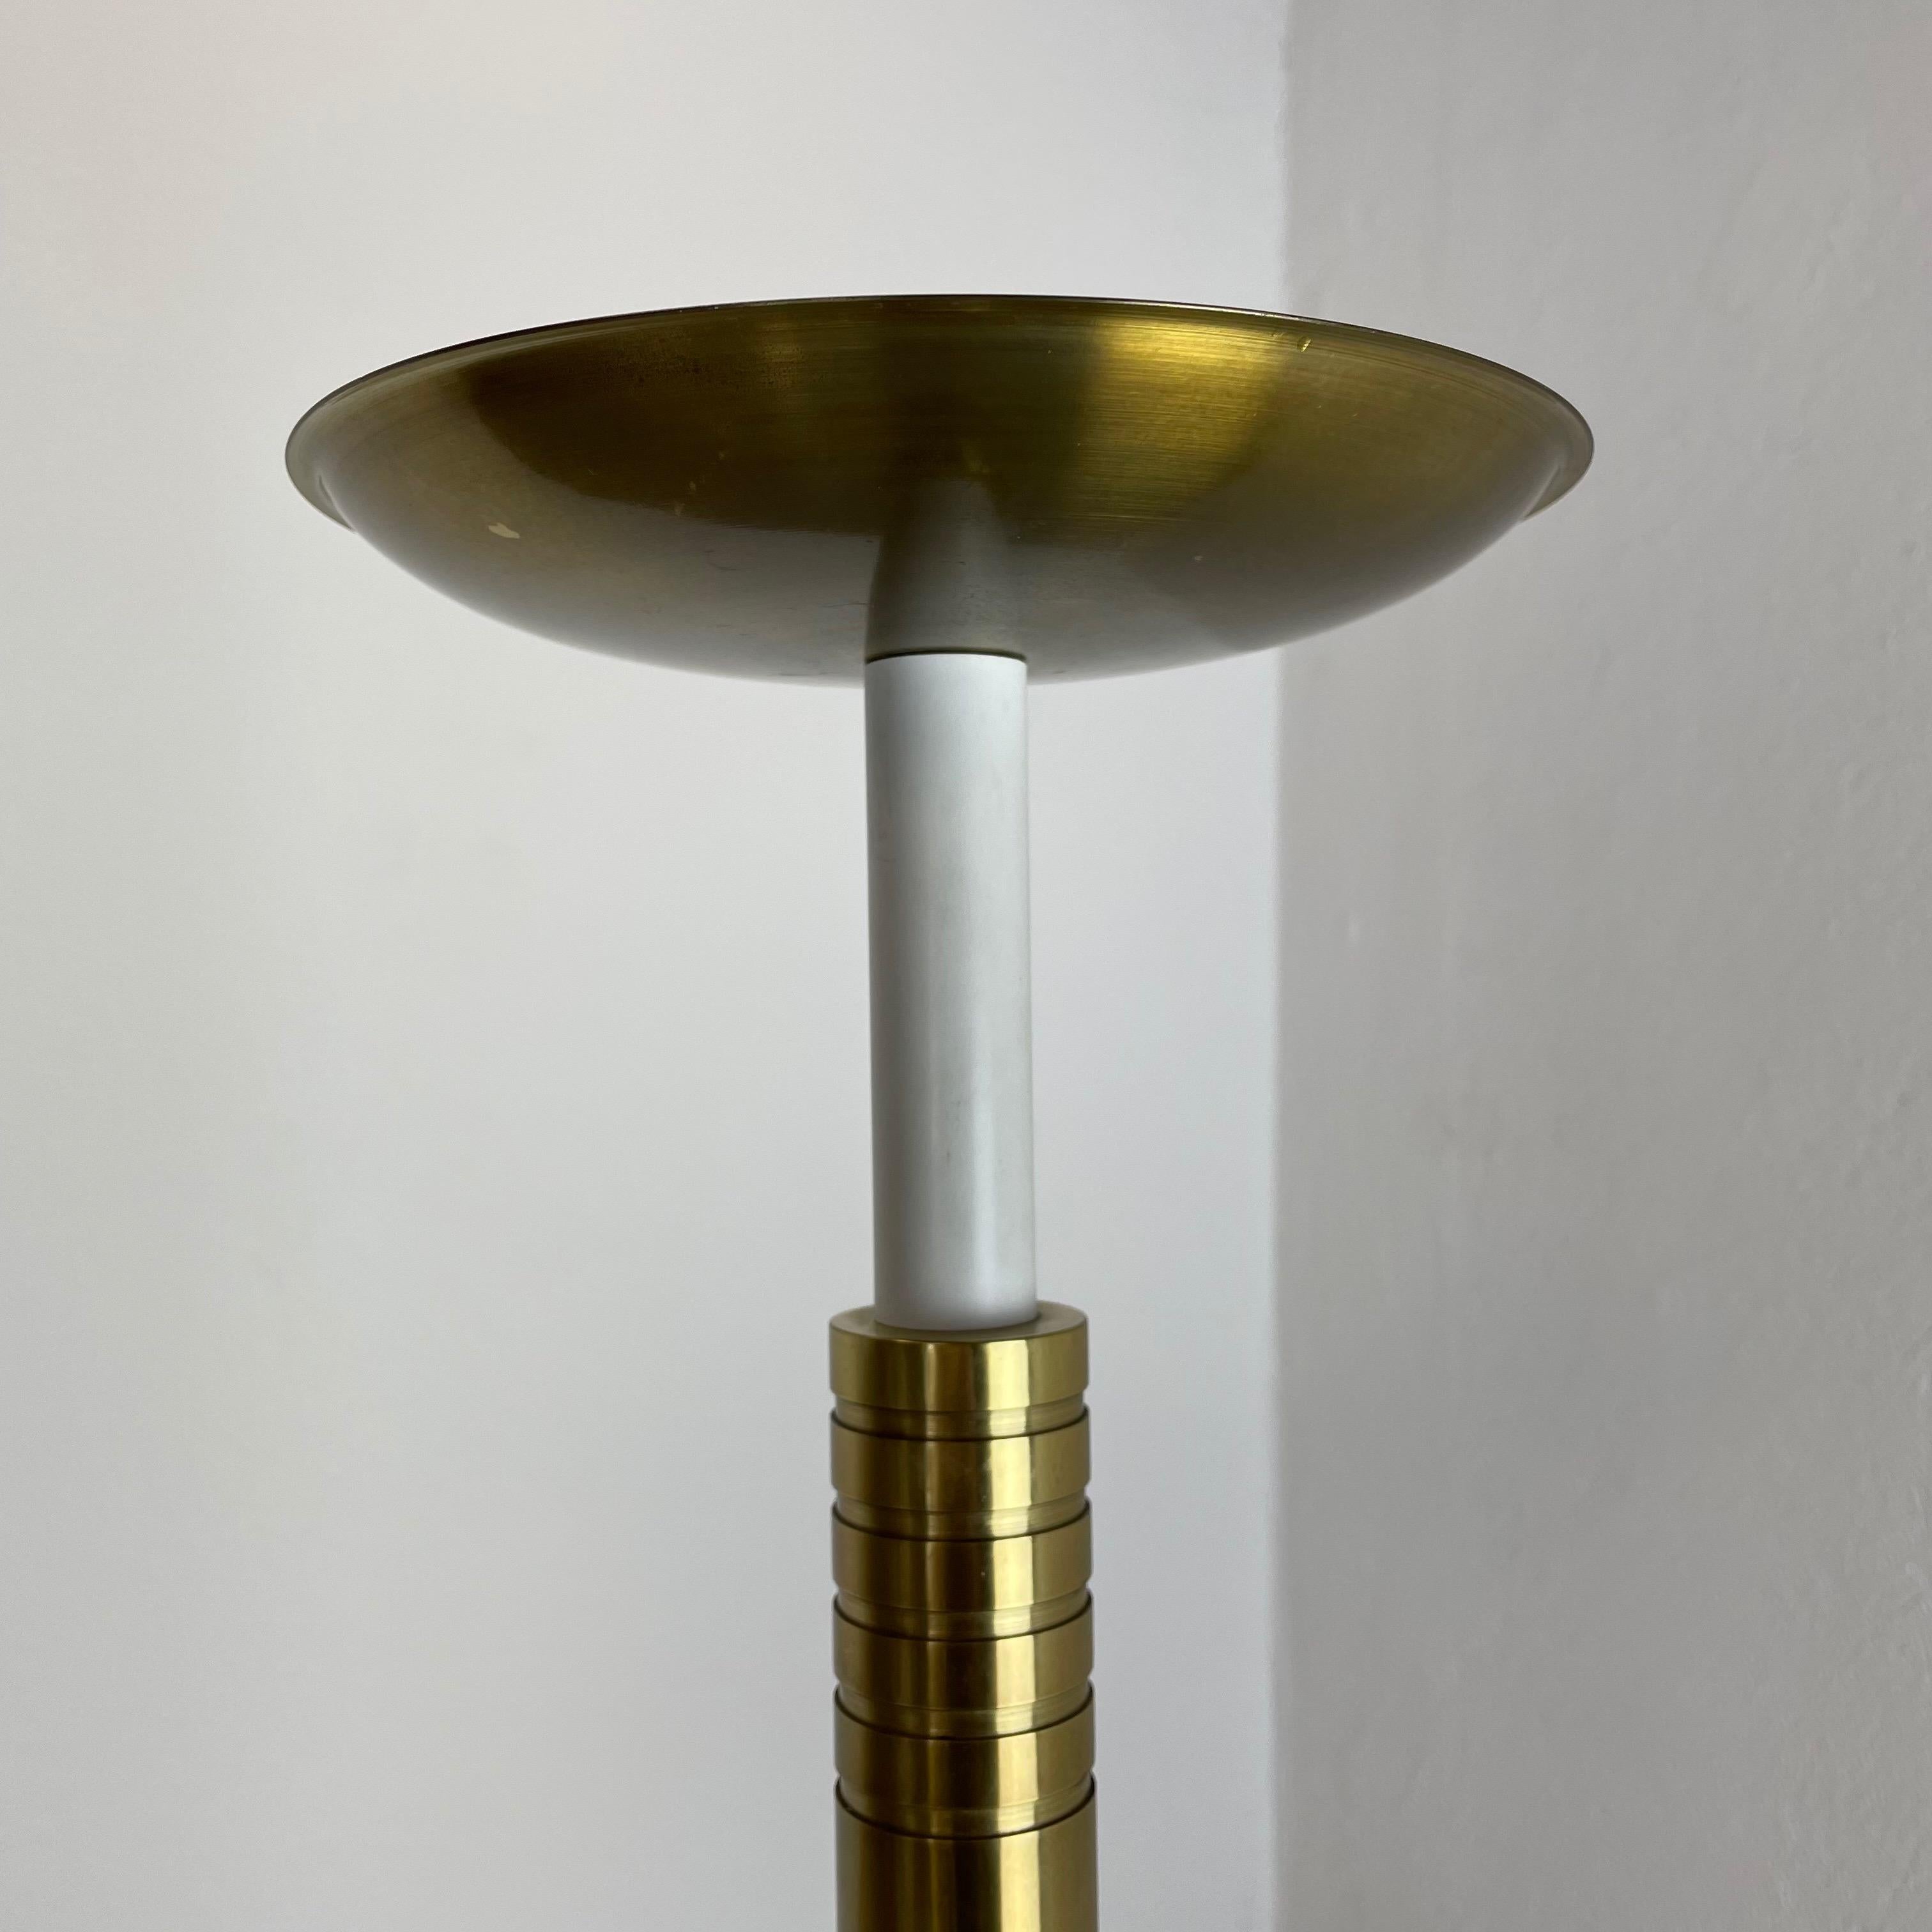 XL 3, 8kg Modernist Sculptural Brutalist Brass Floor Candleholder, Italy, 1950s For Sale 5